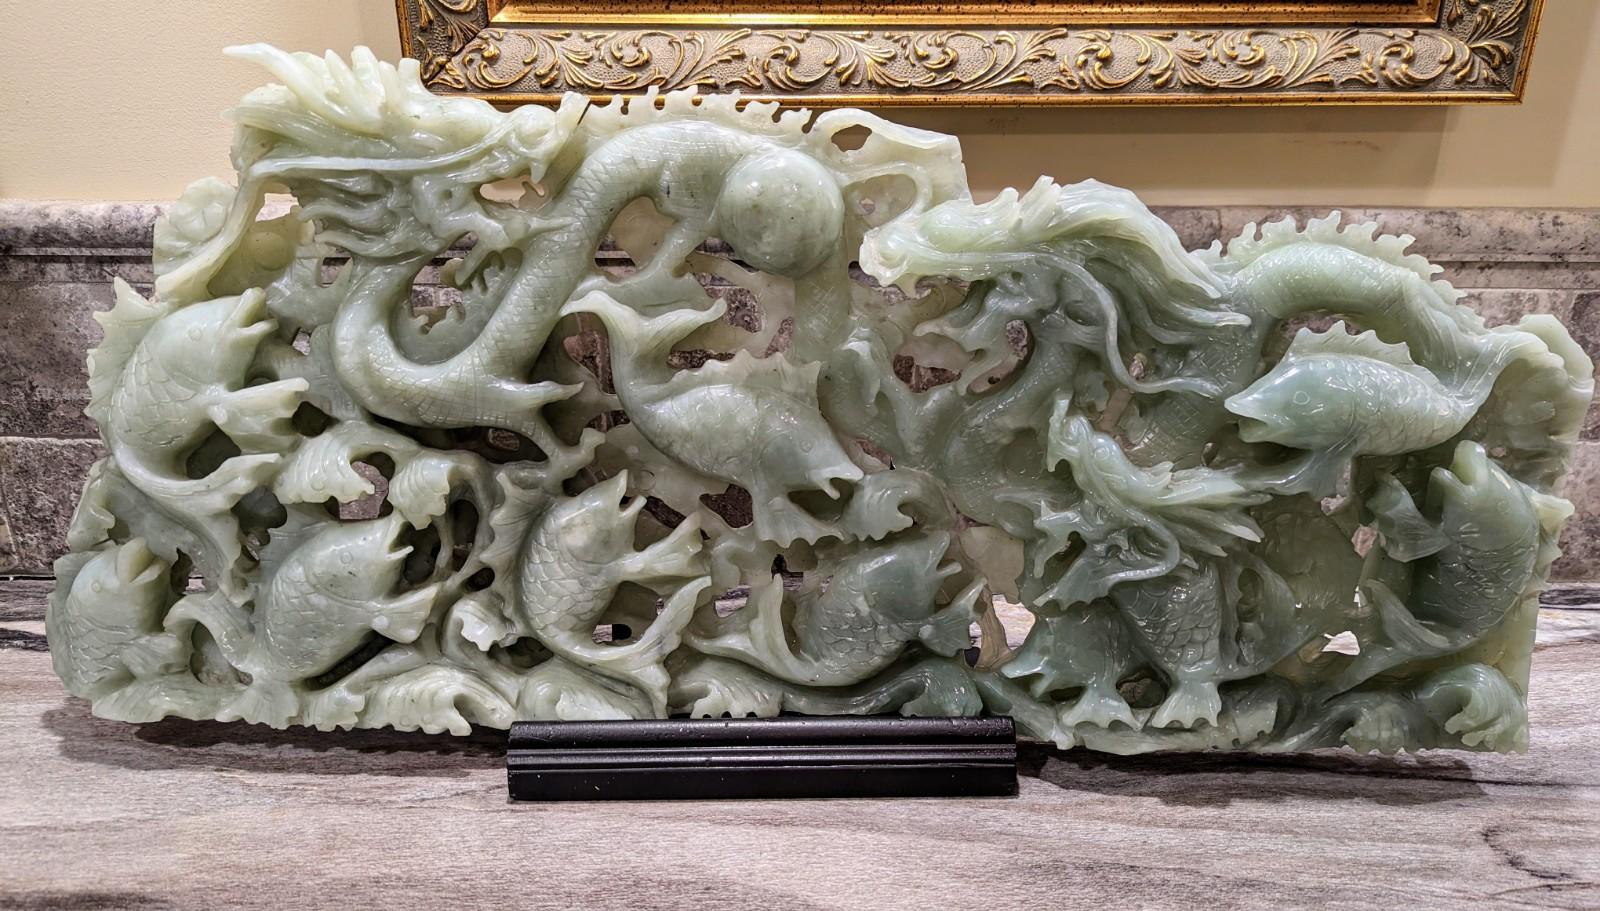 Atemberaubende große chinesische handgeschnitzte echte Jadeskulptur (als Nephrit-Jade getestet), die Drachen und Koi-Fische darstellt. Der ursprüngliche Besitzer gab an, dass diese Skulptur während der Qing-Dynastie geschaffen wurde. Uns wurde auch